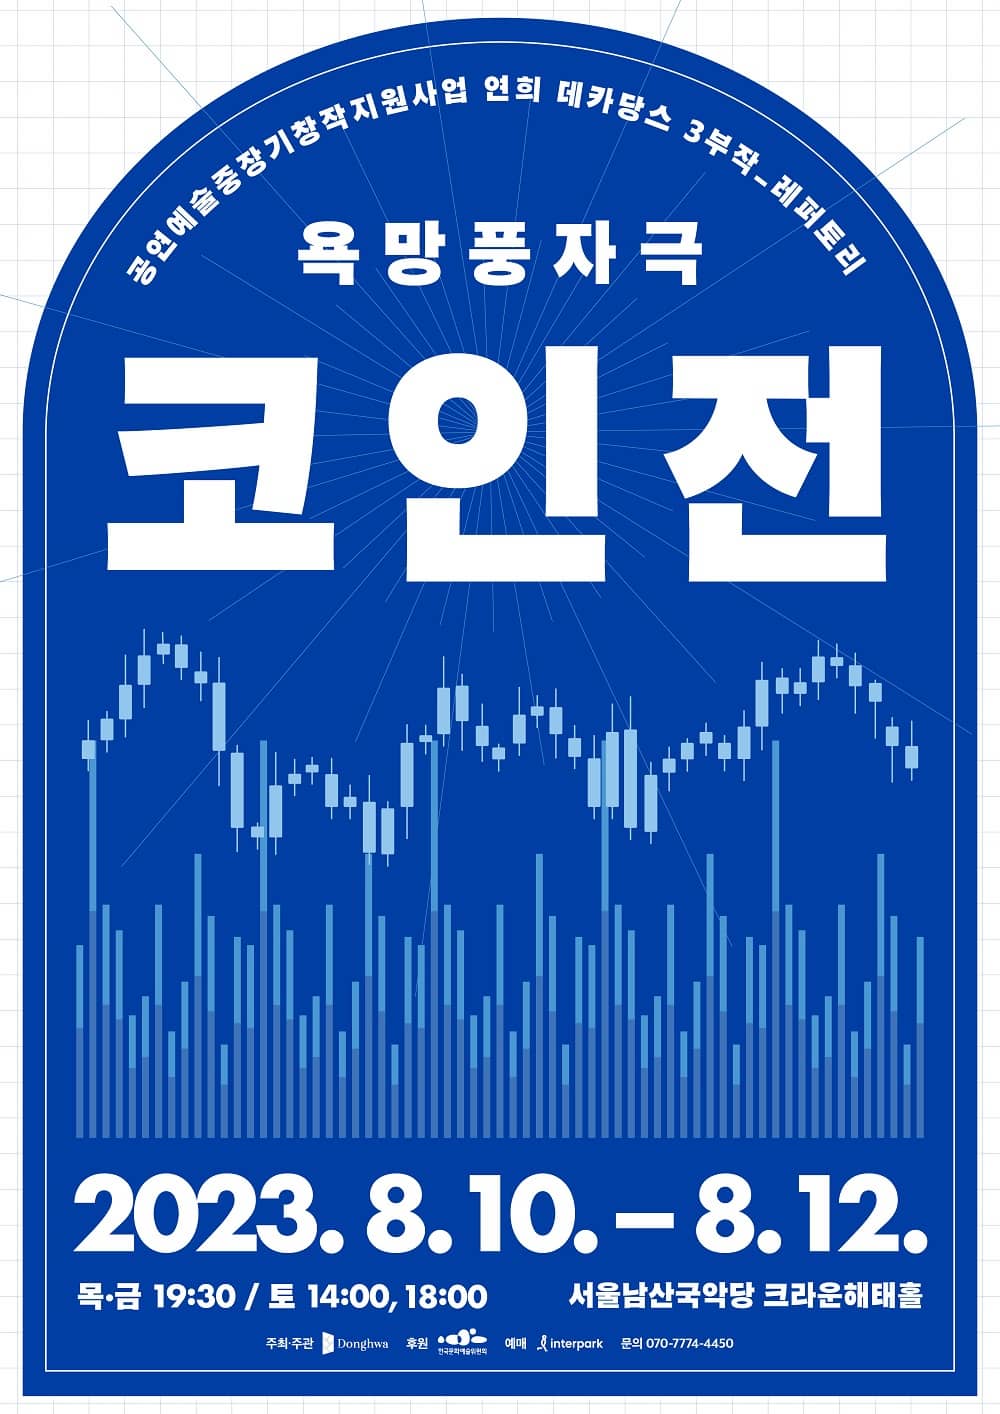 공연예술중장기창작지원사업, 연희 데카당스 3부작욕망풍자극 <코인전>
2023년 8월 10일부터 12일까지 서울남산국악당 크라운해태홀에서 진행된다.